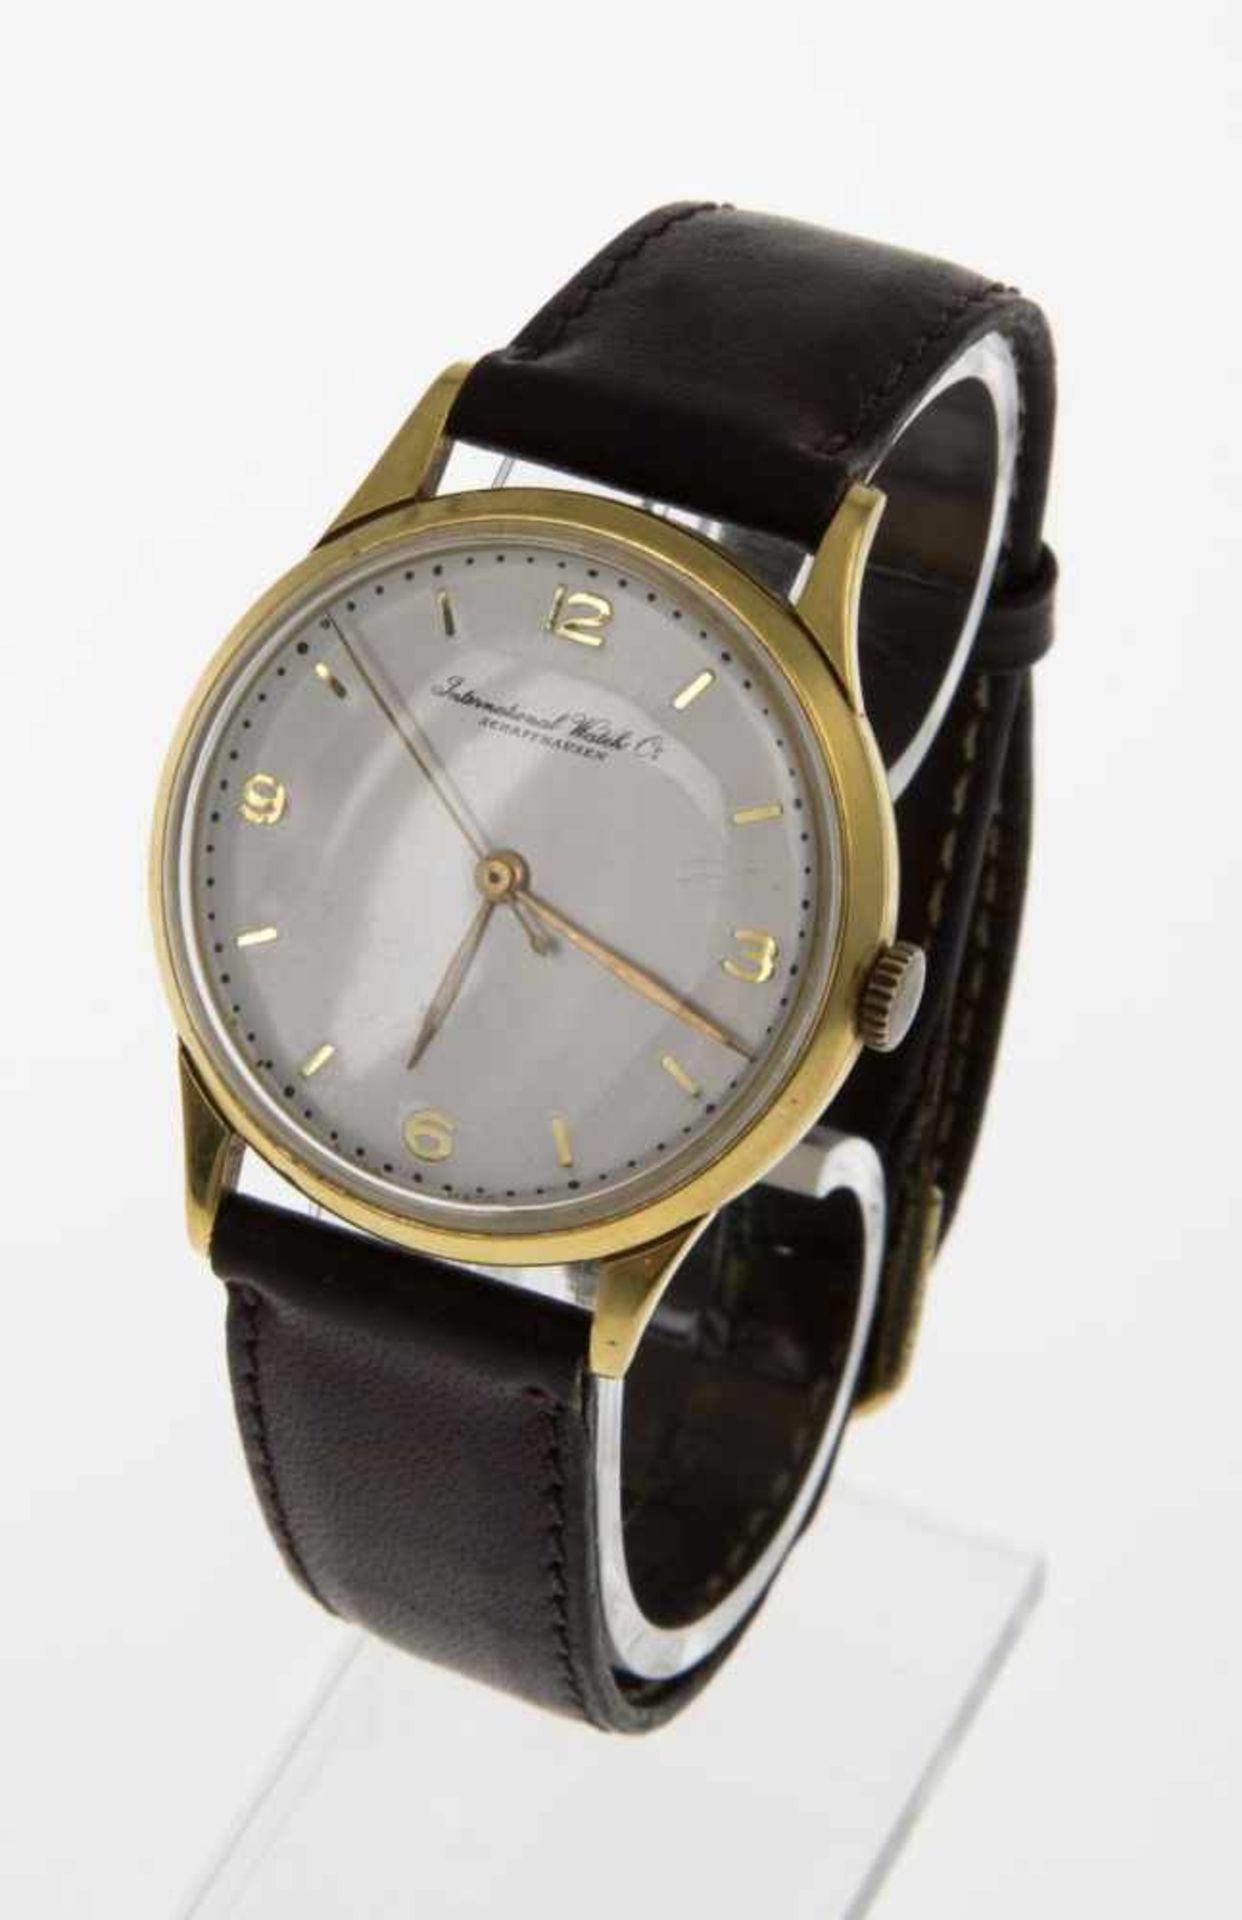 Elegante IWC-ArmbanduhrRundes Gehäuse aus Gelbgold 750. Plexiglas. Versilbertes Zifferblatt mit